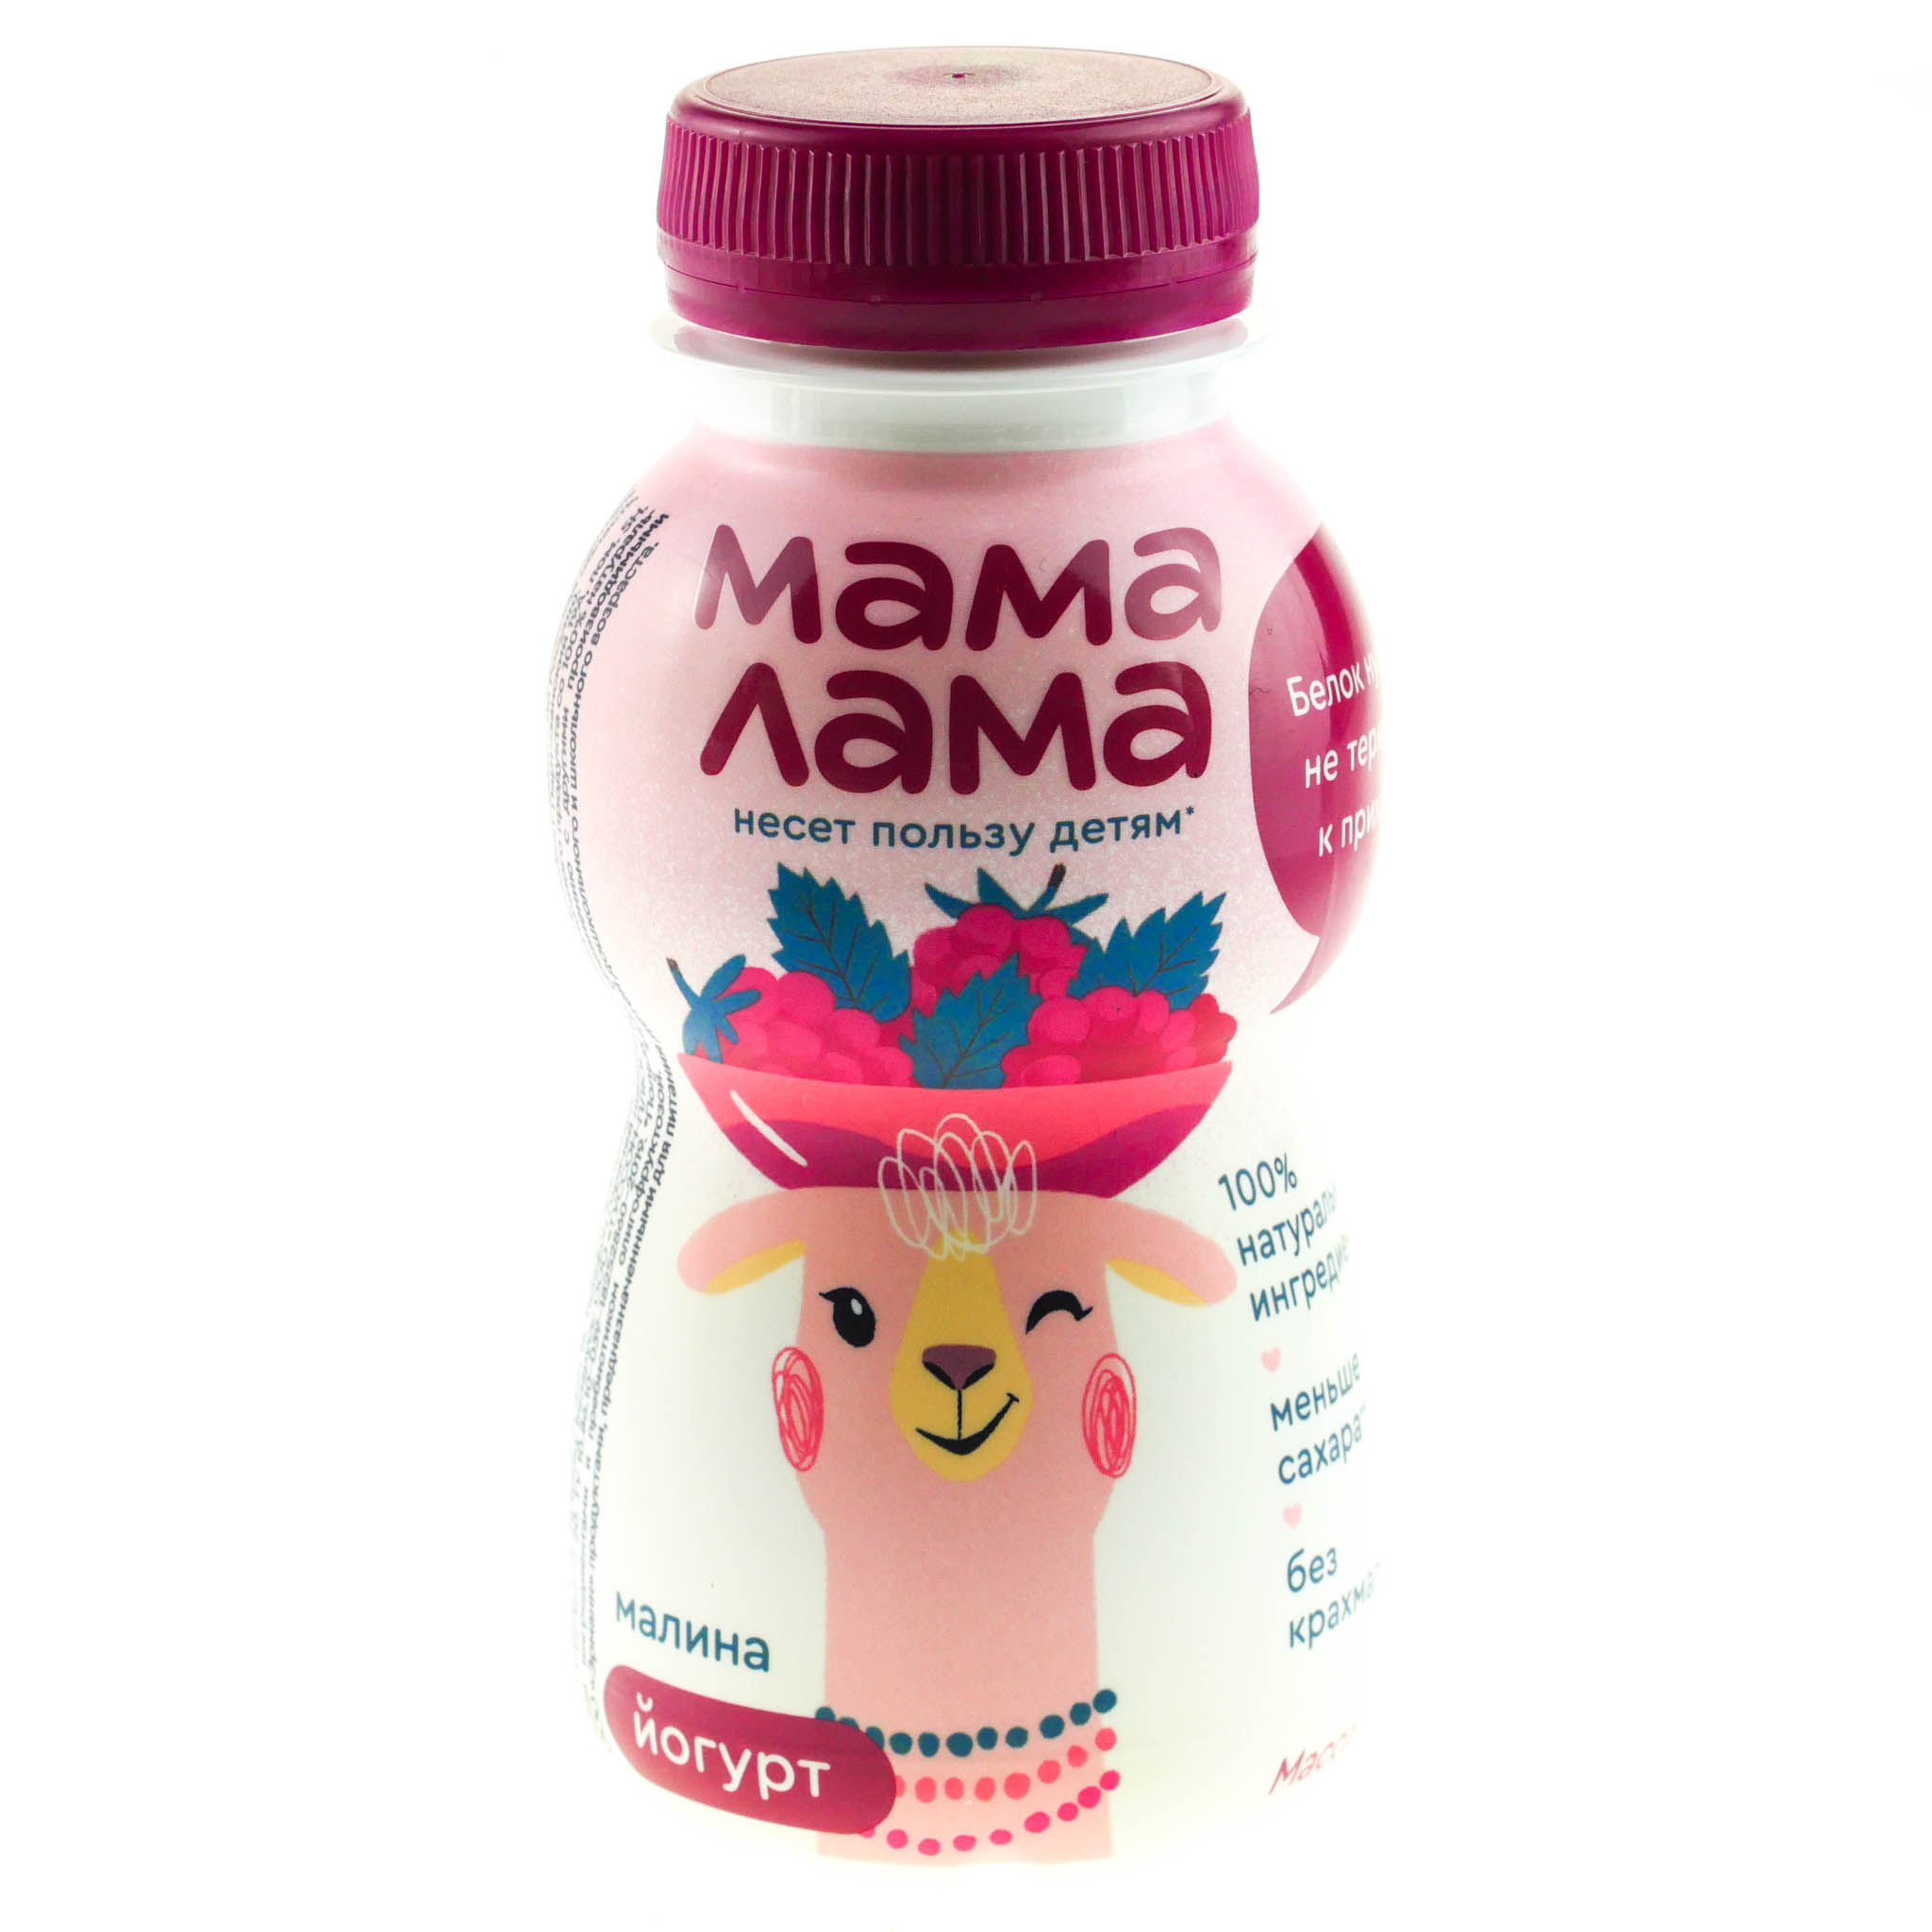 Картинка лама мама. Йогурт питьевой мама лама 2,5% малина 200г. Мама лама 2,5% 200г йогурт питьевой. Йогурт мама лама 2,5% 200г клубника-банан. Мама лама йогурт питьевой с малиной.